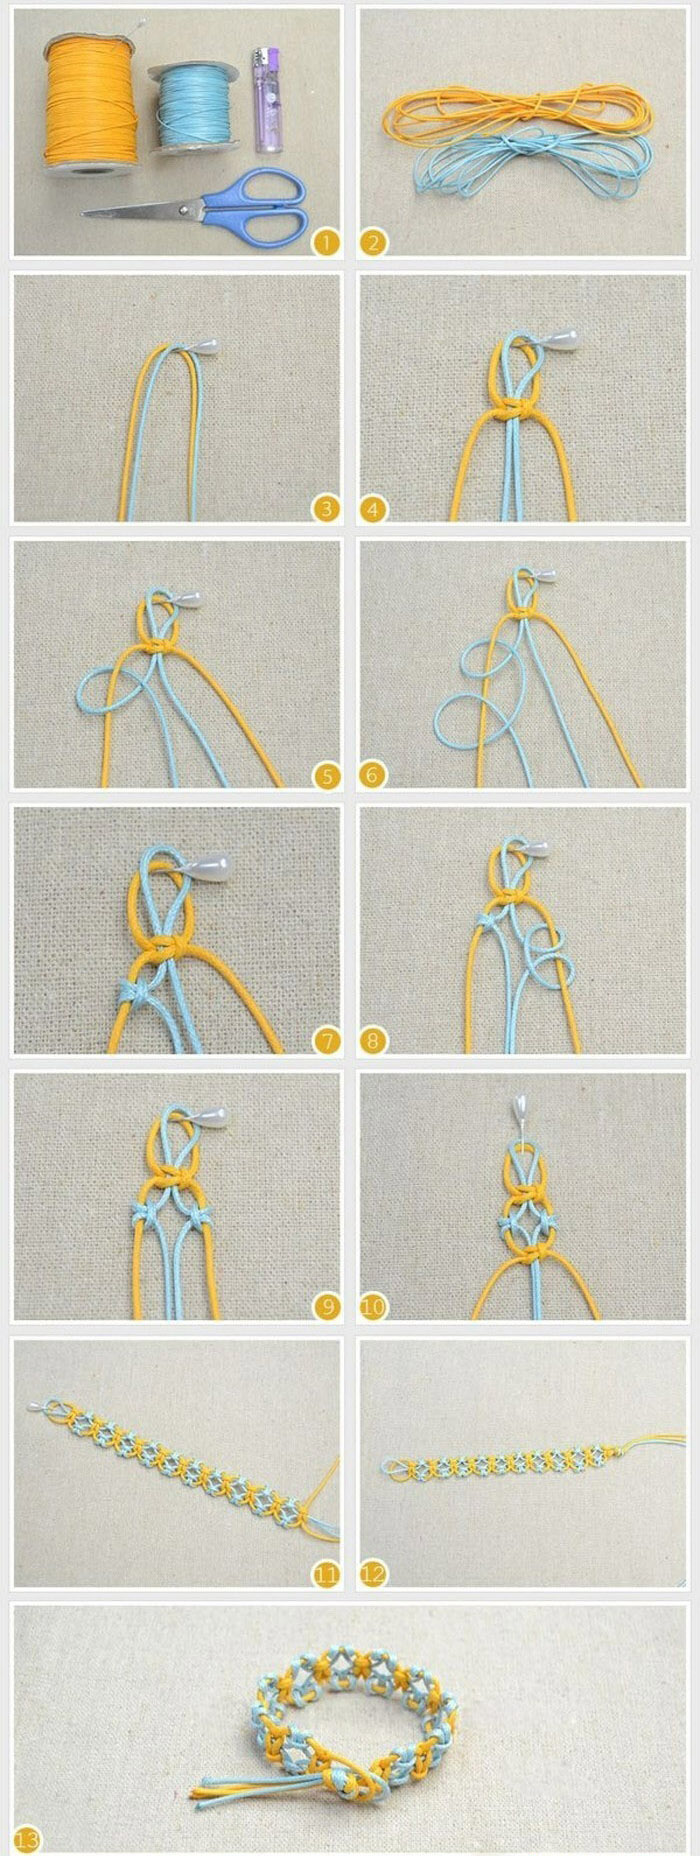 教大家制作一款手工编织手链